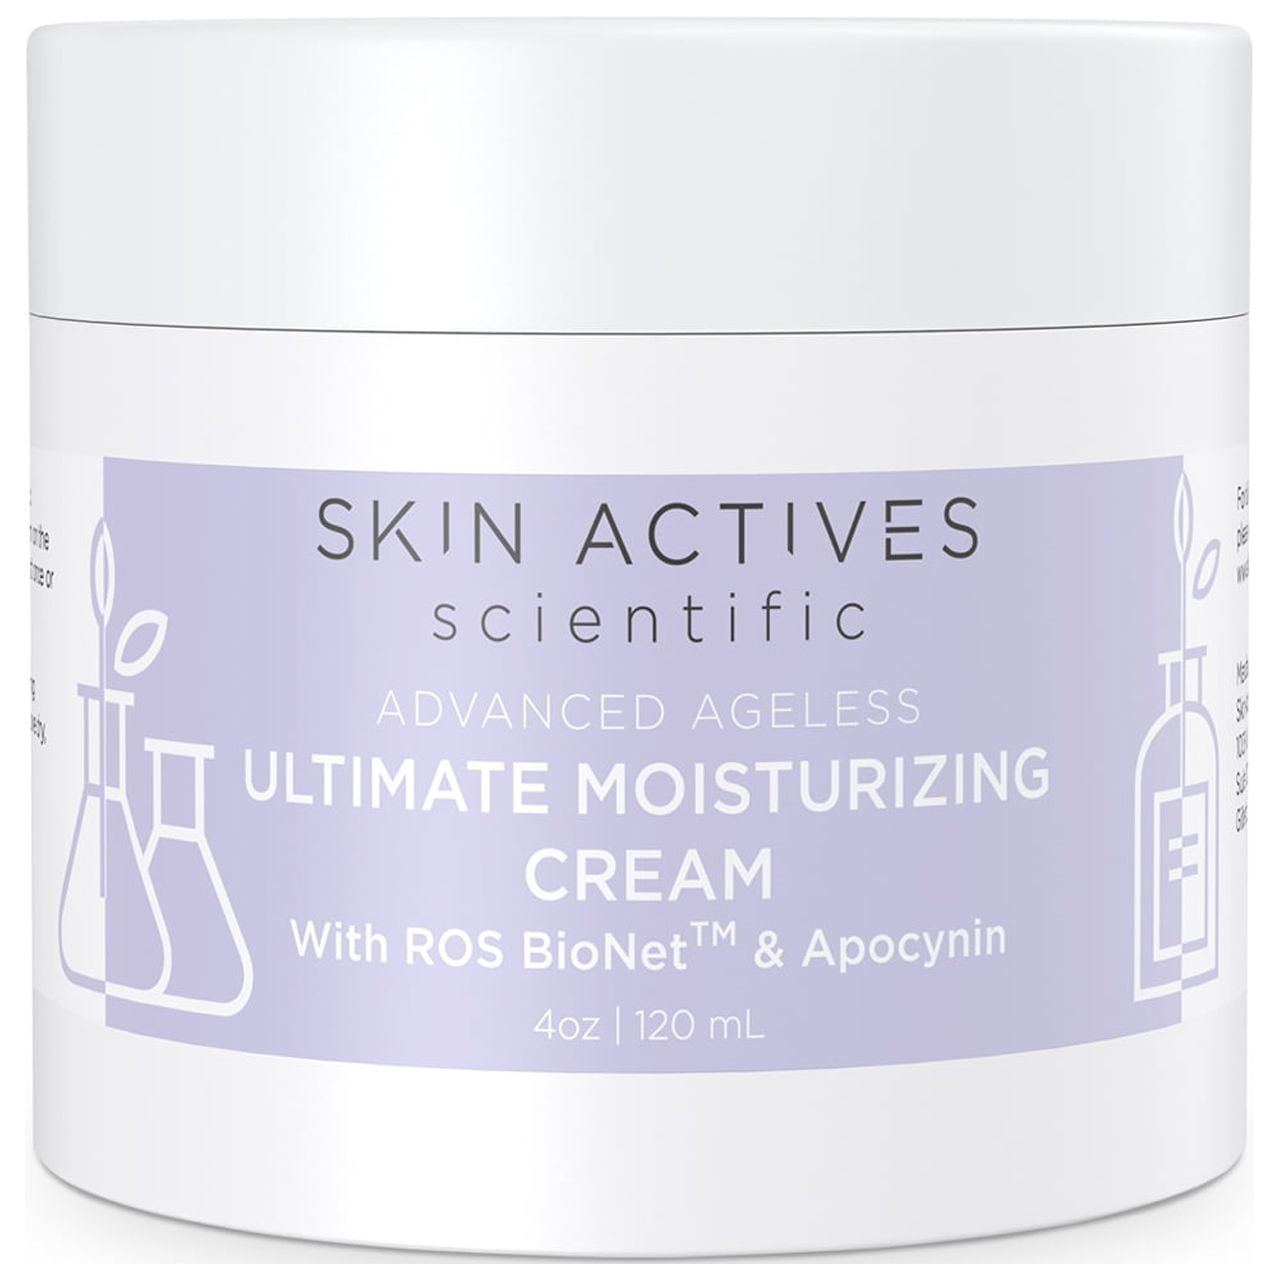 Skin Actives Scientific Ultimate Moisturizing Cream